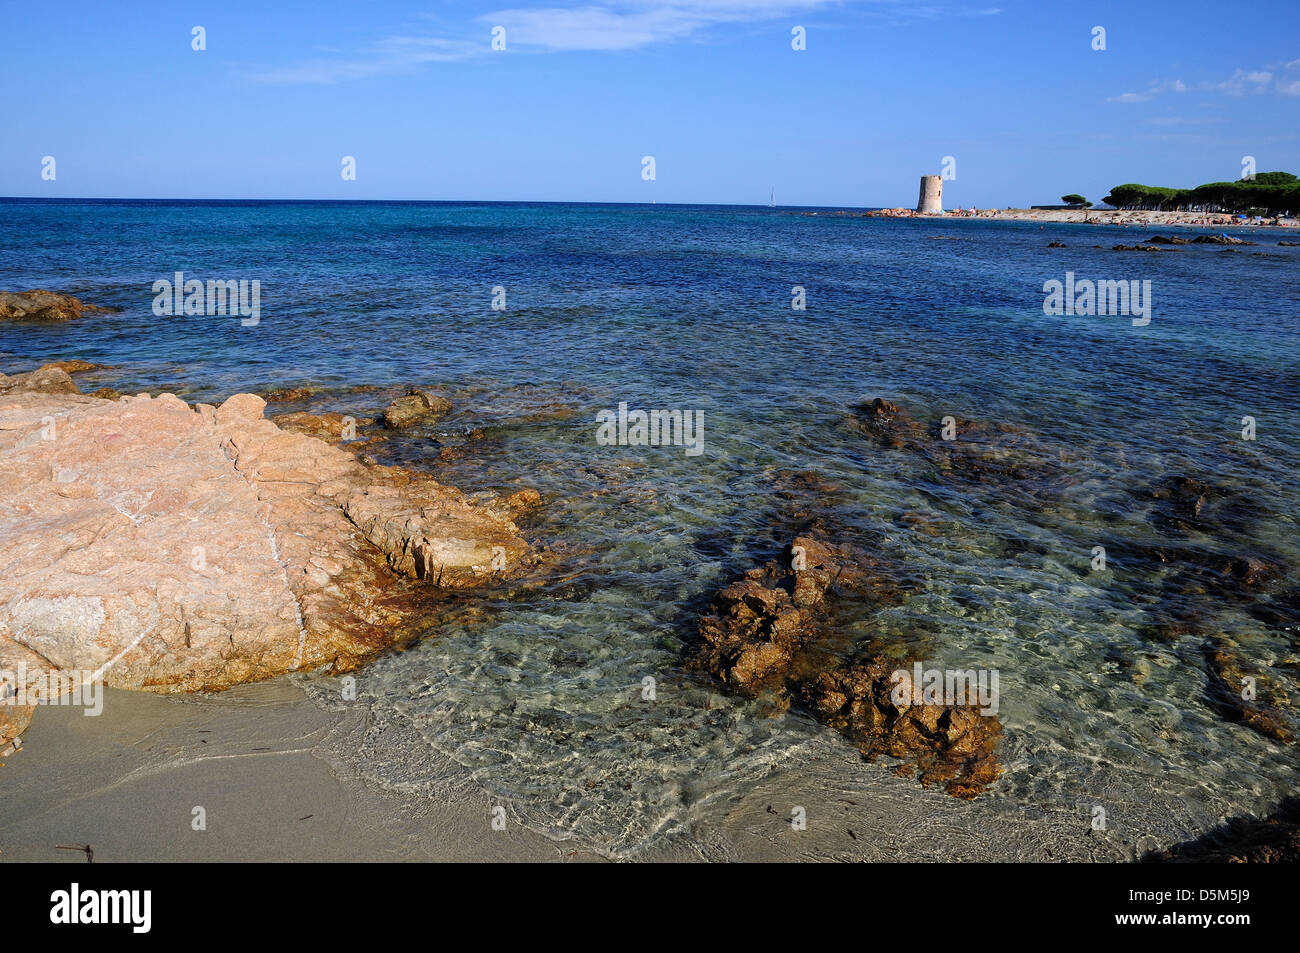 Sardegna Spiaggia di San Giovanni La Caletta Italy by andrea quercioli Stock Photo